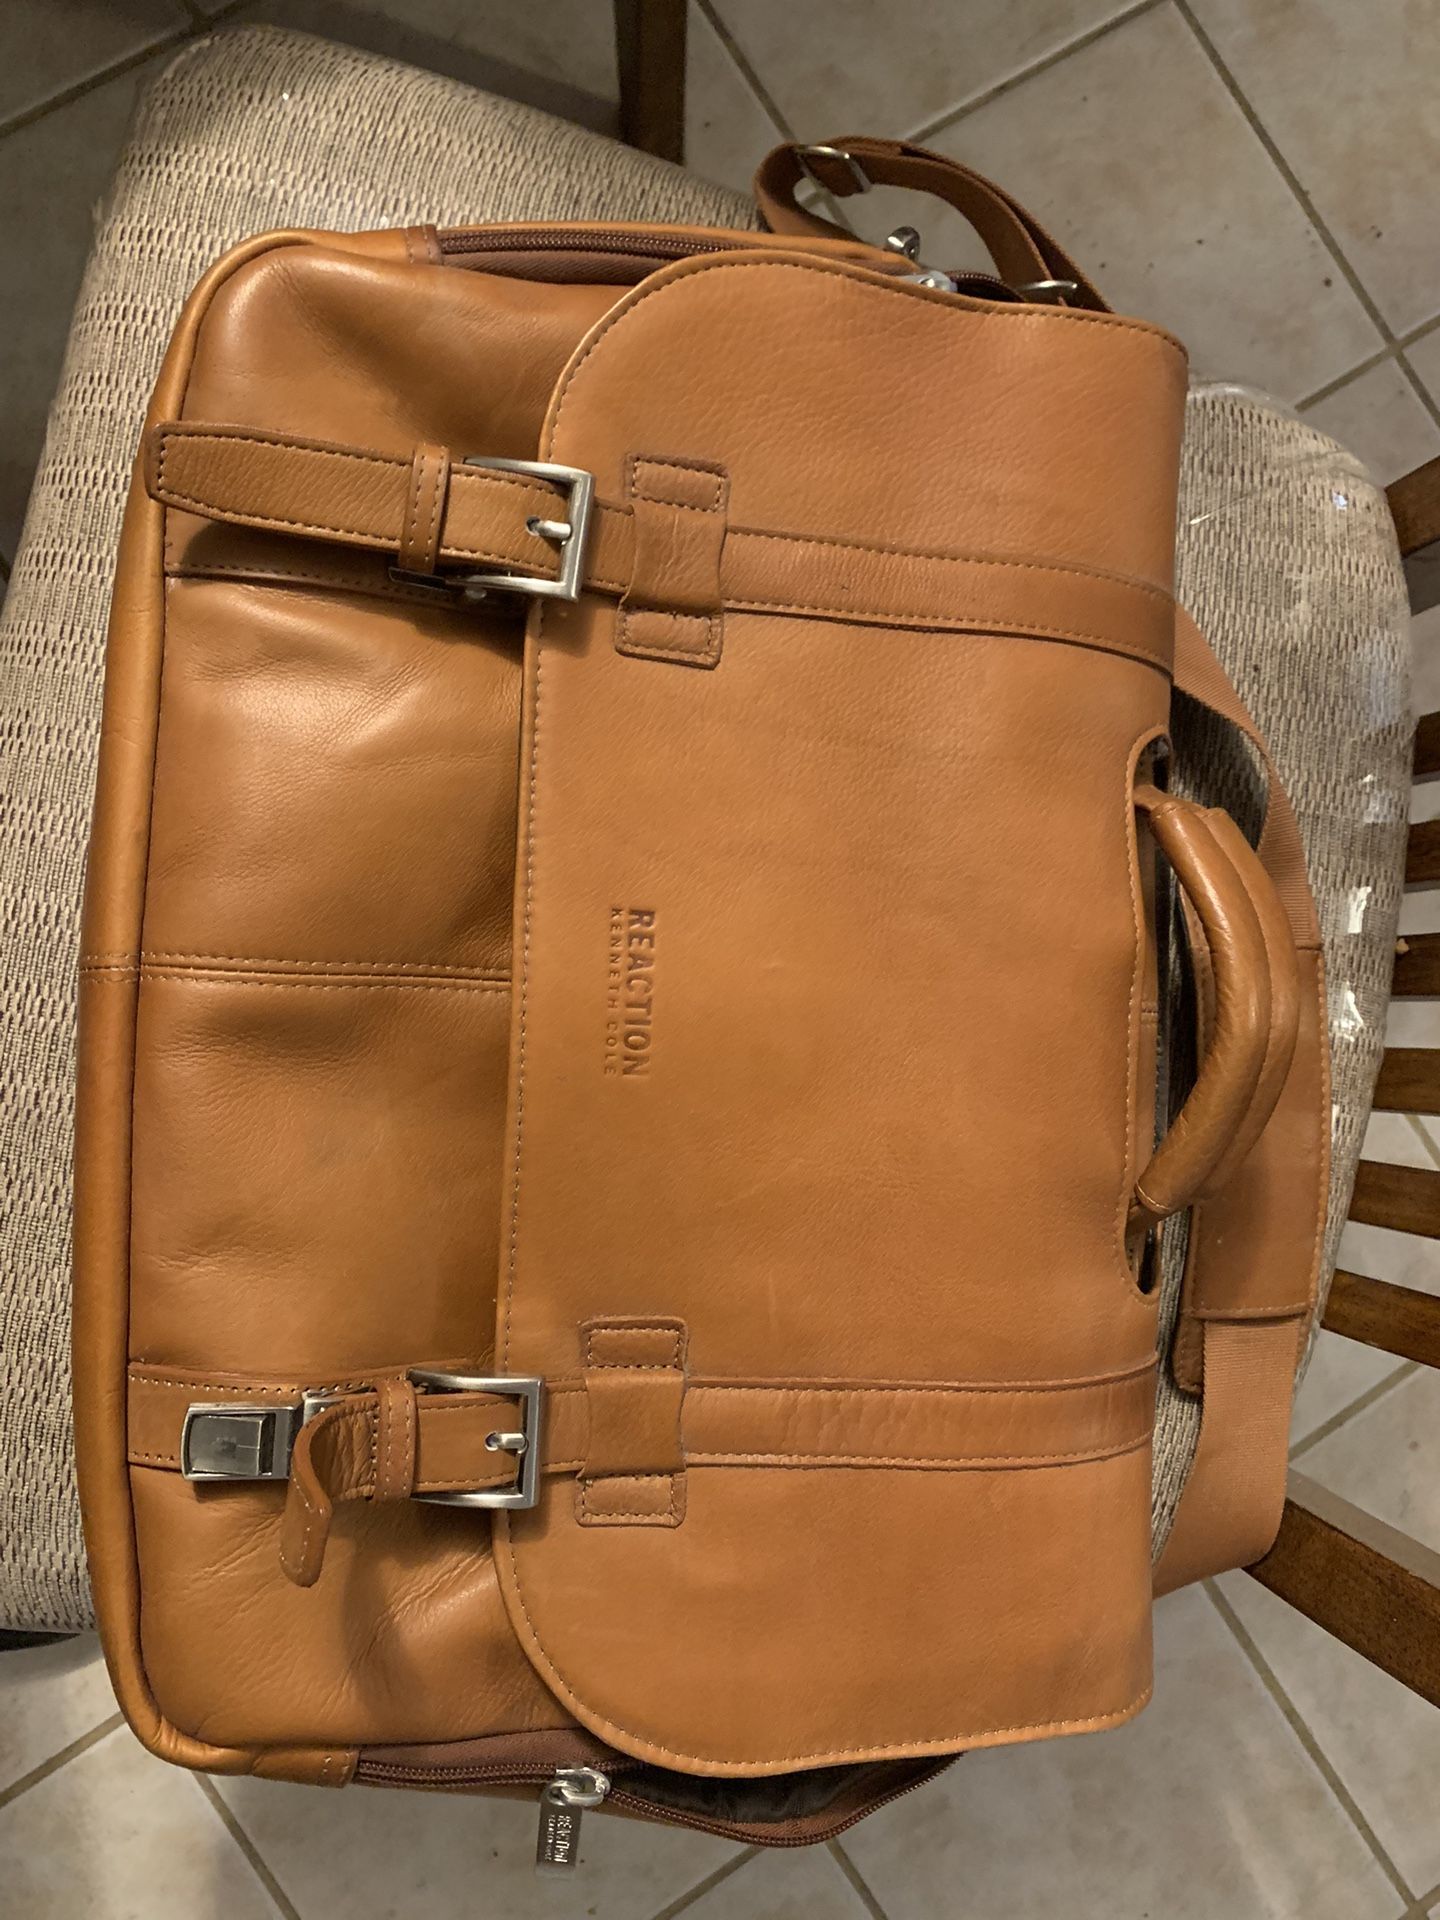 Kenneth Cole leather Messenger bag